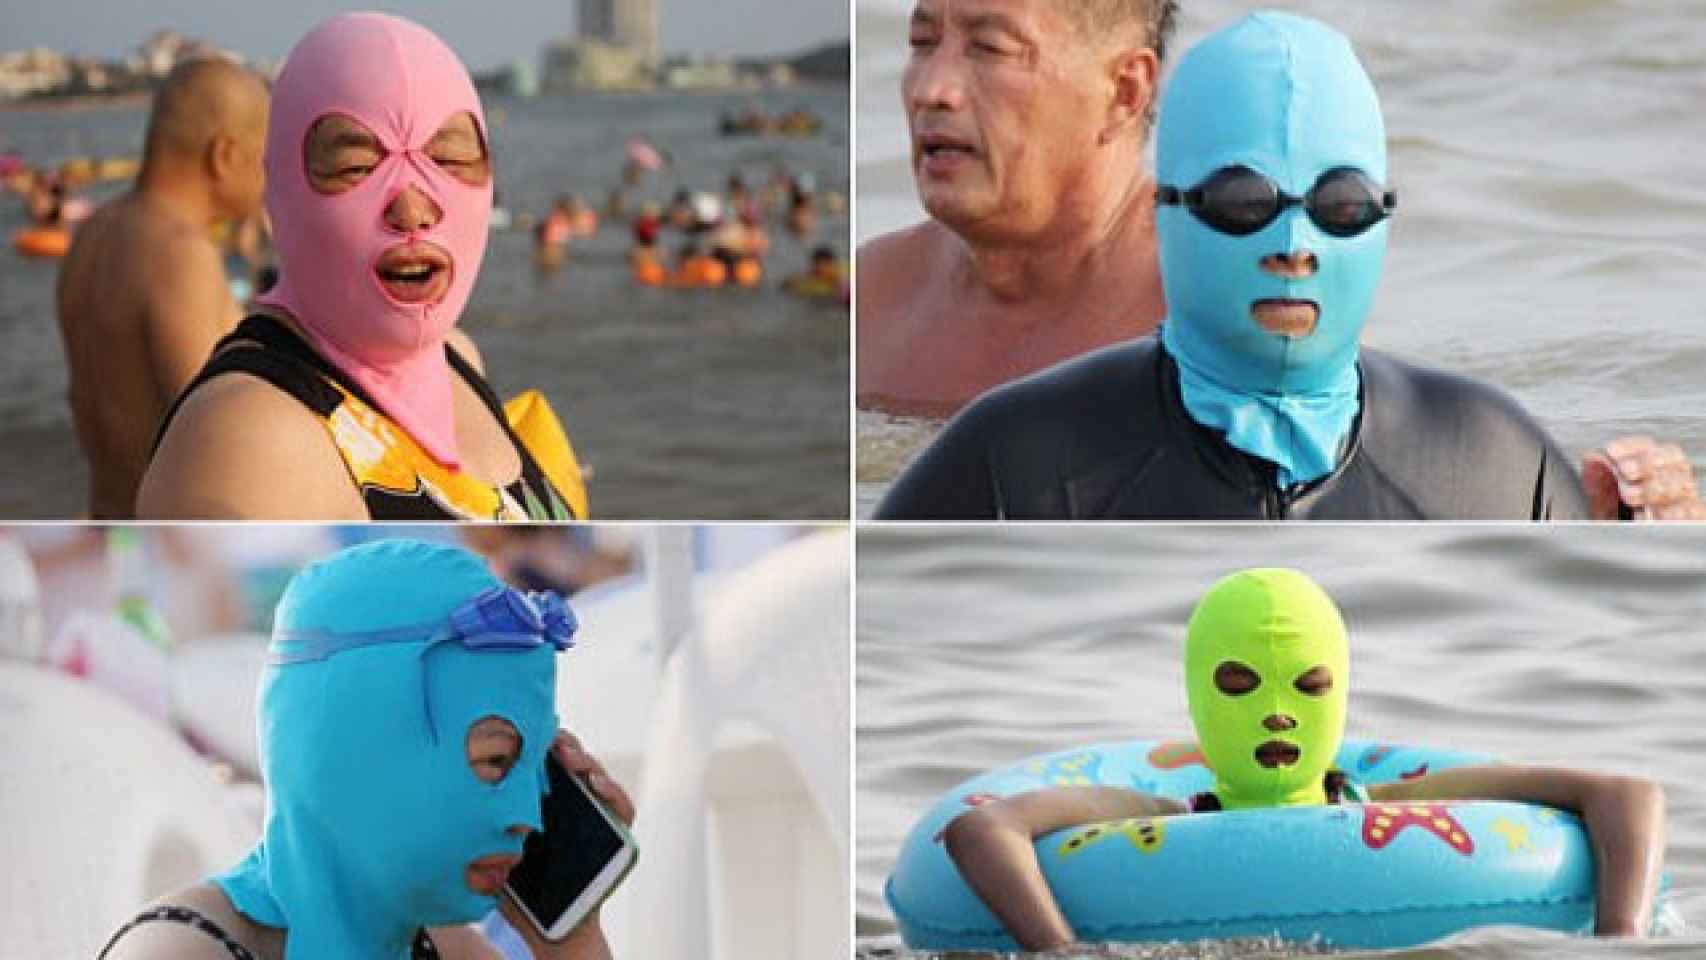 El 'facekini' o una máscara de baño para evitar el moreno: la moda